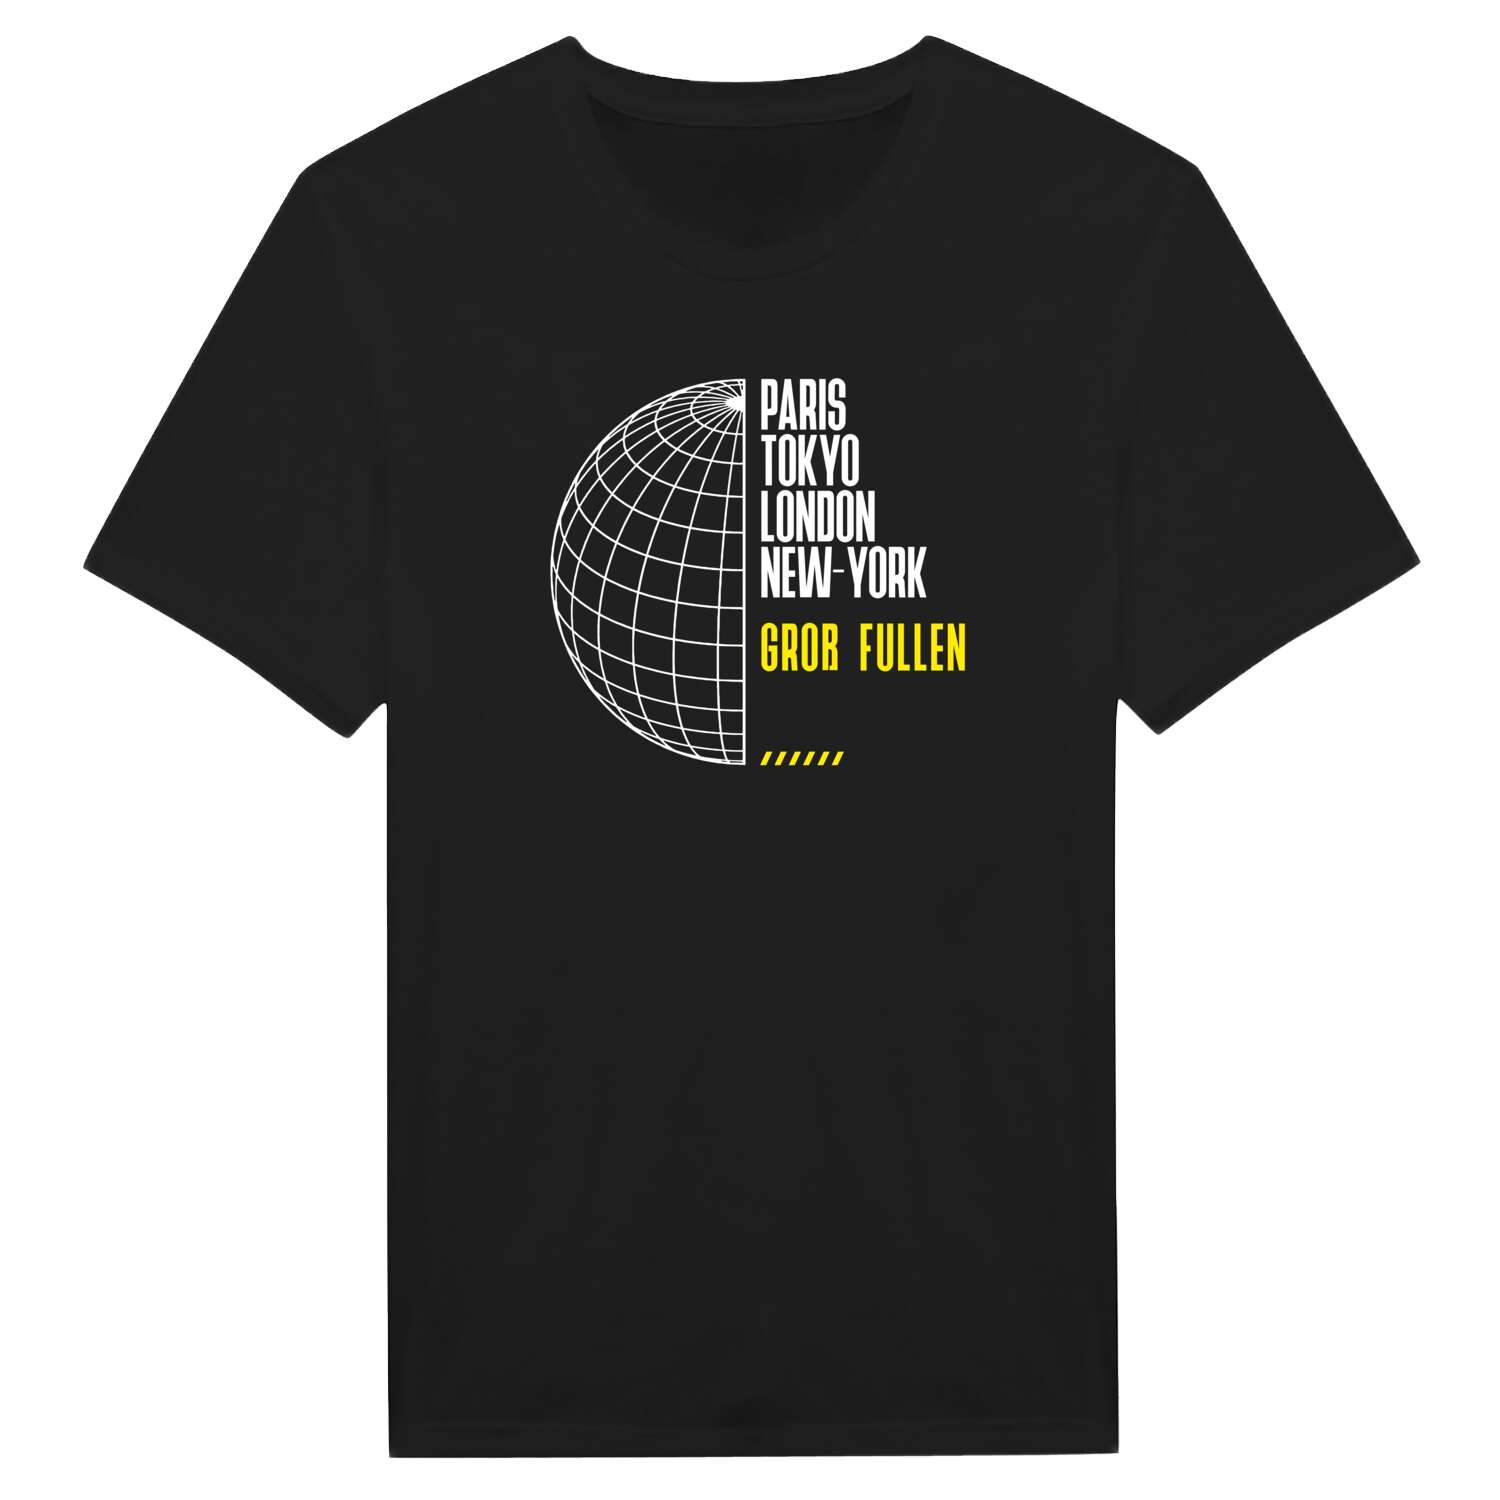 Groß Fullen T-Shirt »Paris Tokyo London«